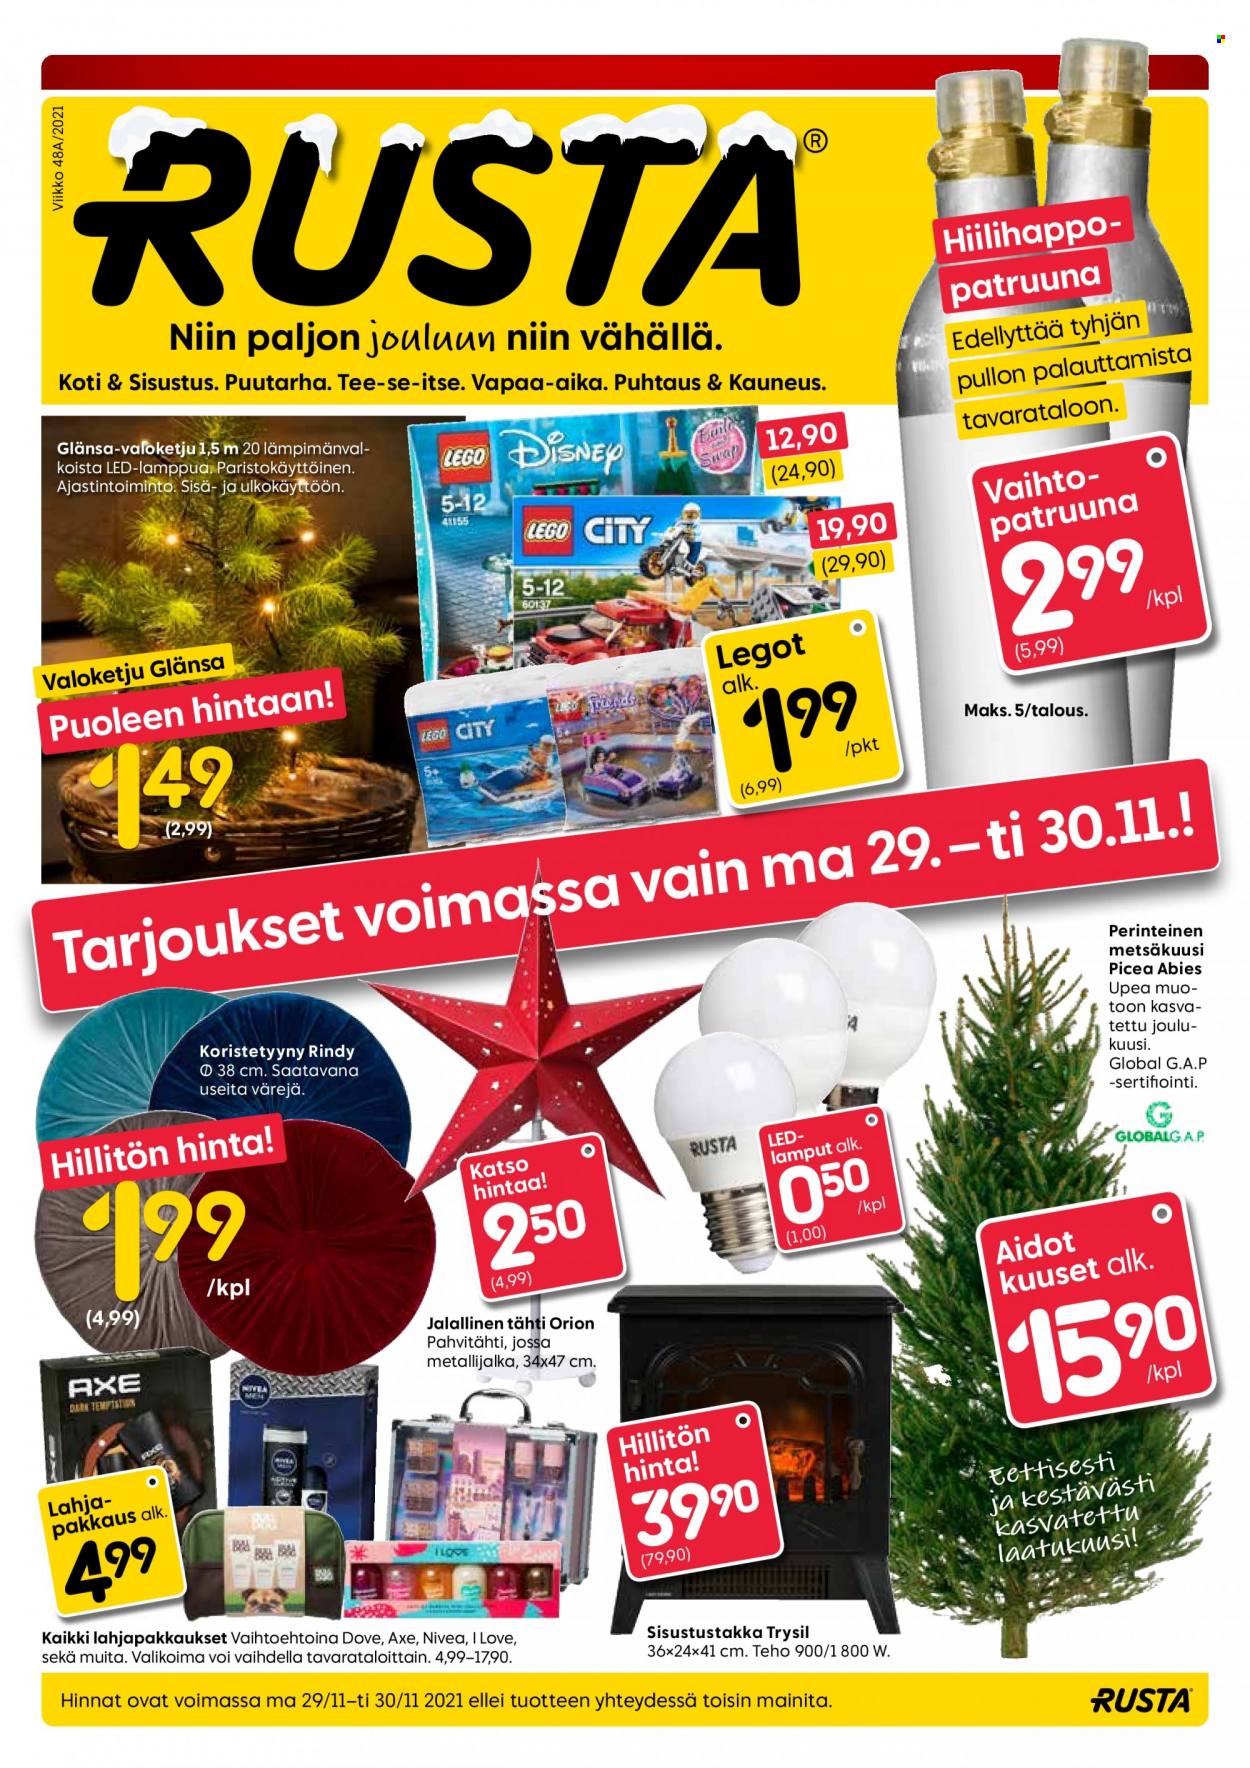 thumbnail - Rusta tarjoukset  - 29.11.2021 - 30.11.2021 - Tarjoustuotteet - koristetyyny, joulukuusi, valoketju. Sivu 1.